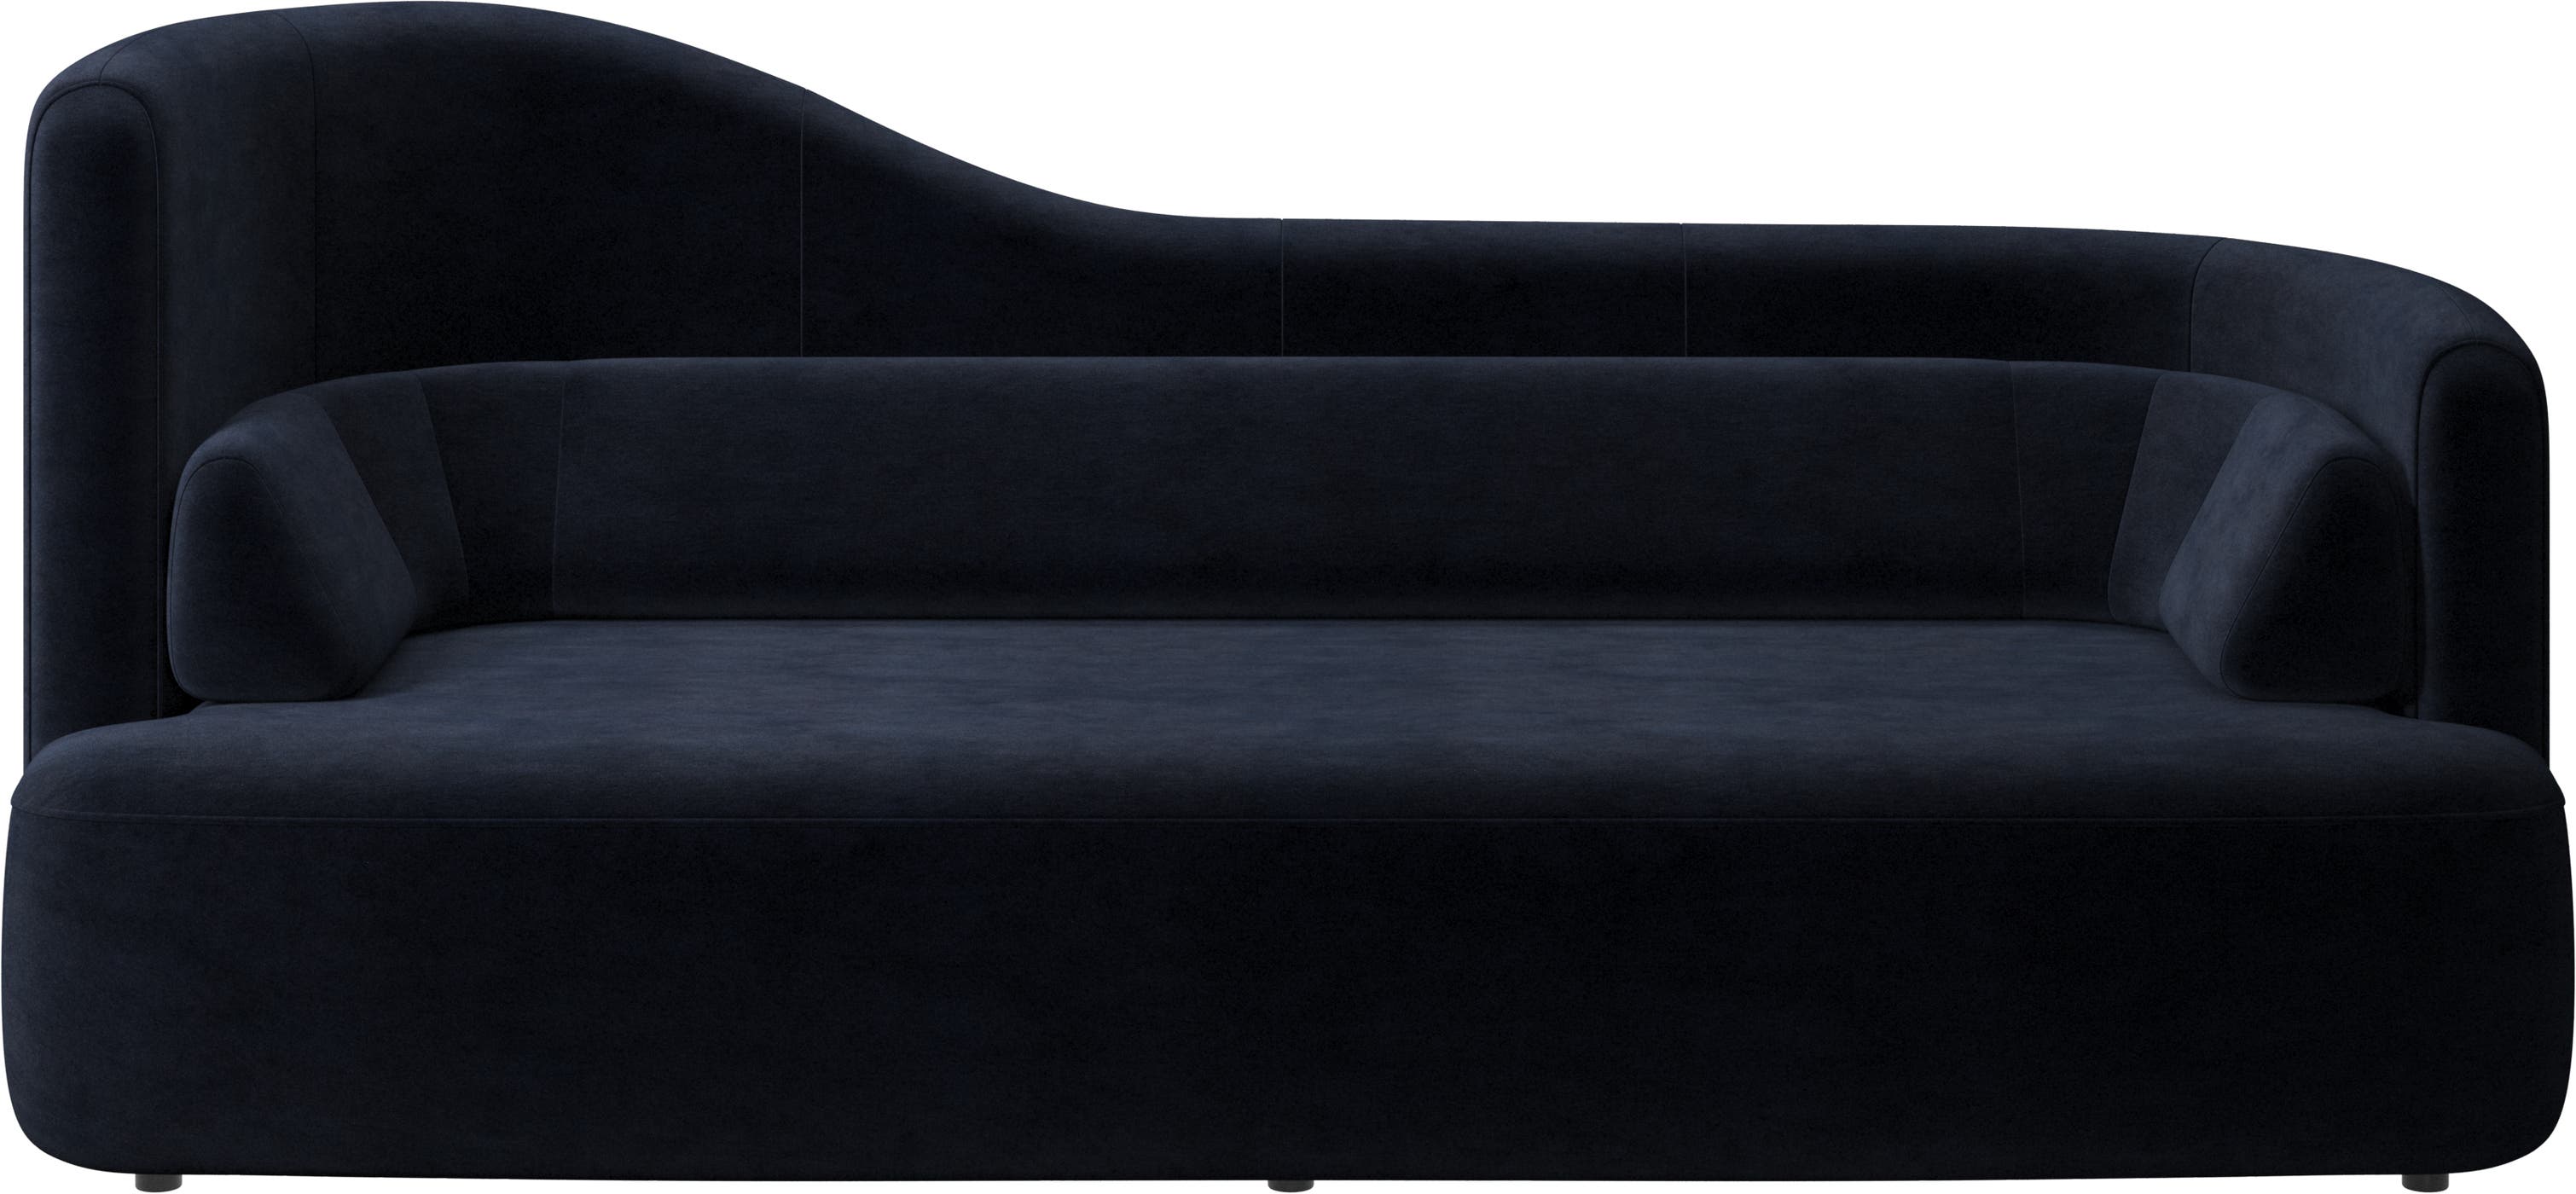 Ottawa sofa